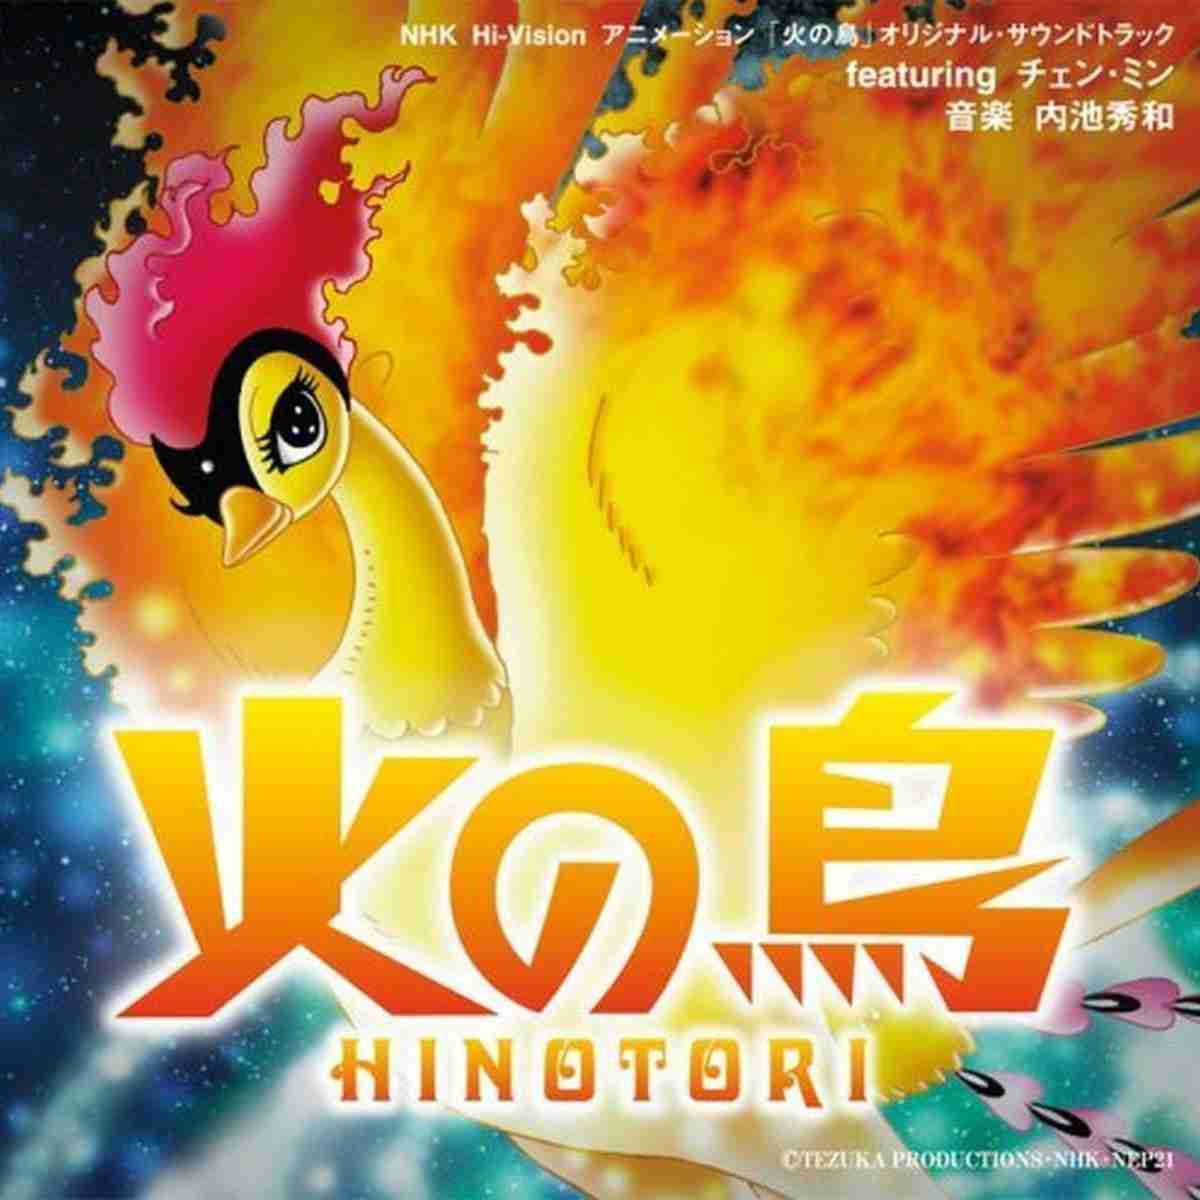 [内池秀和][2004.03.31]NHK HI-VISION アニメーション「火の鳥」オリジナル サウンド.jpg